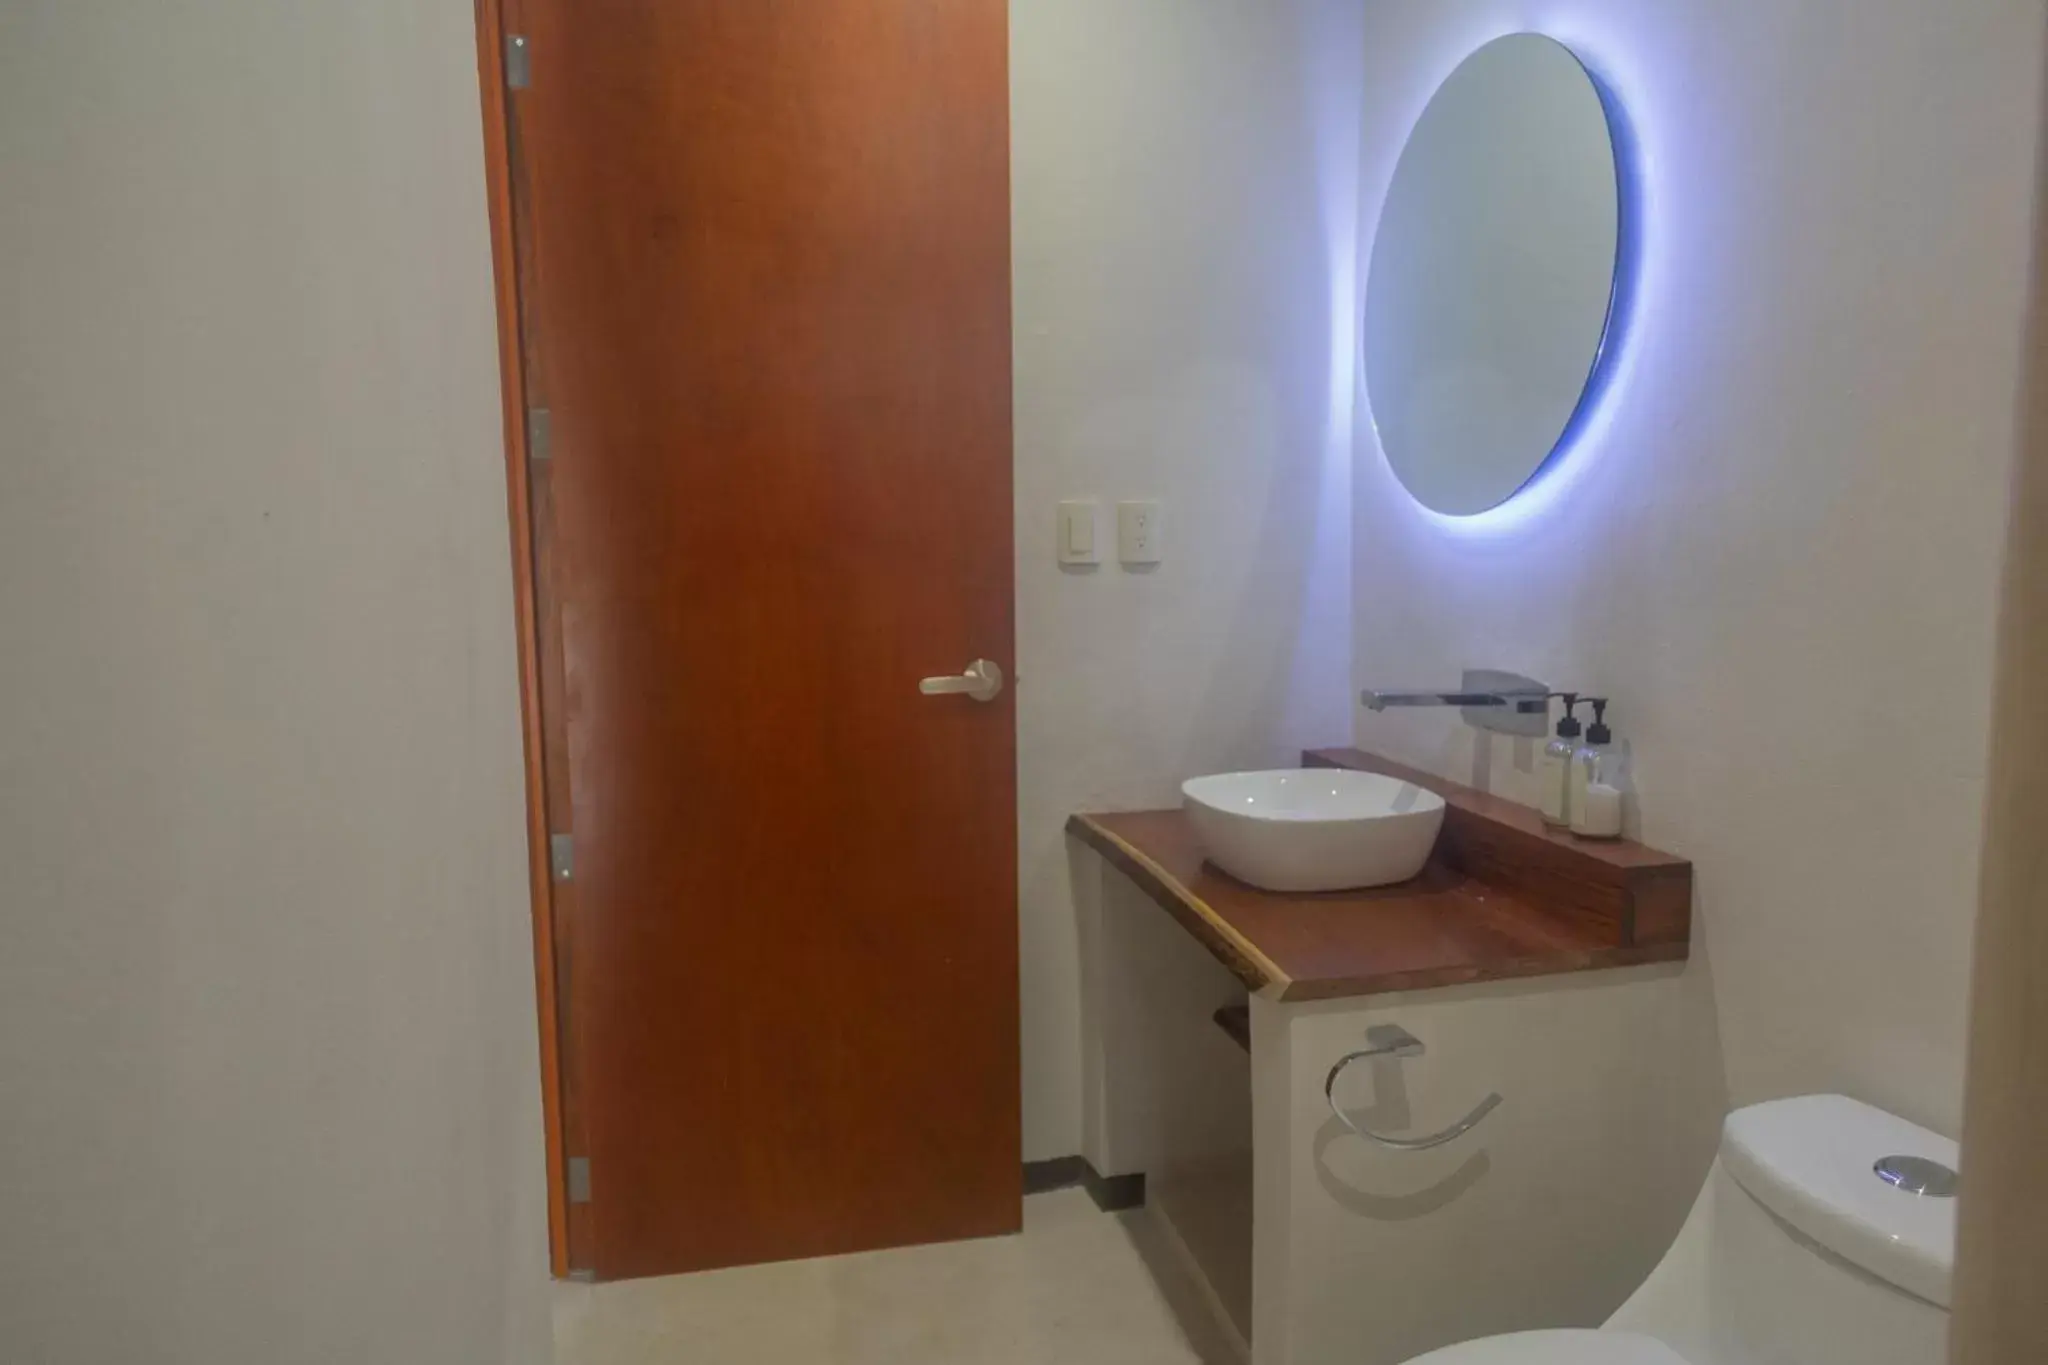 Bathroom in Hotel Circulo Bacalar